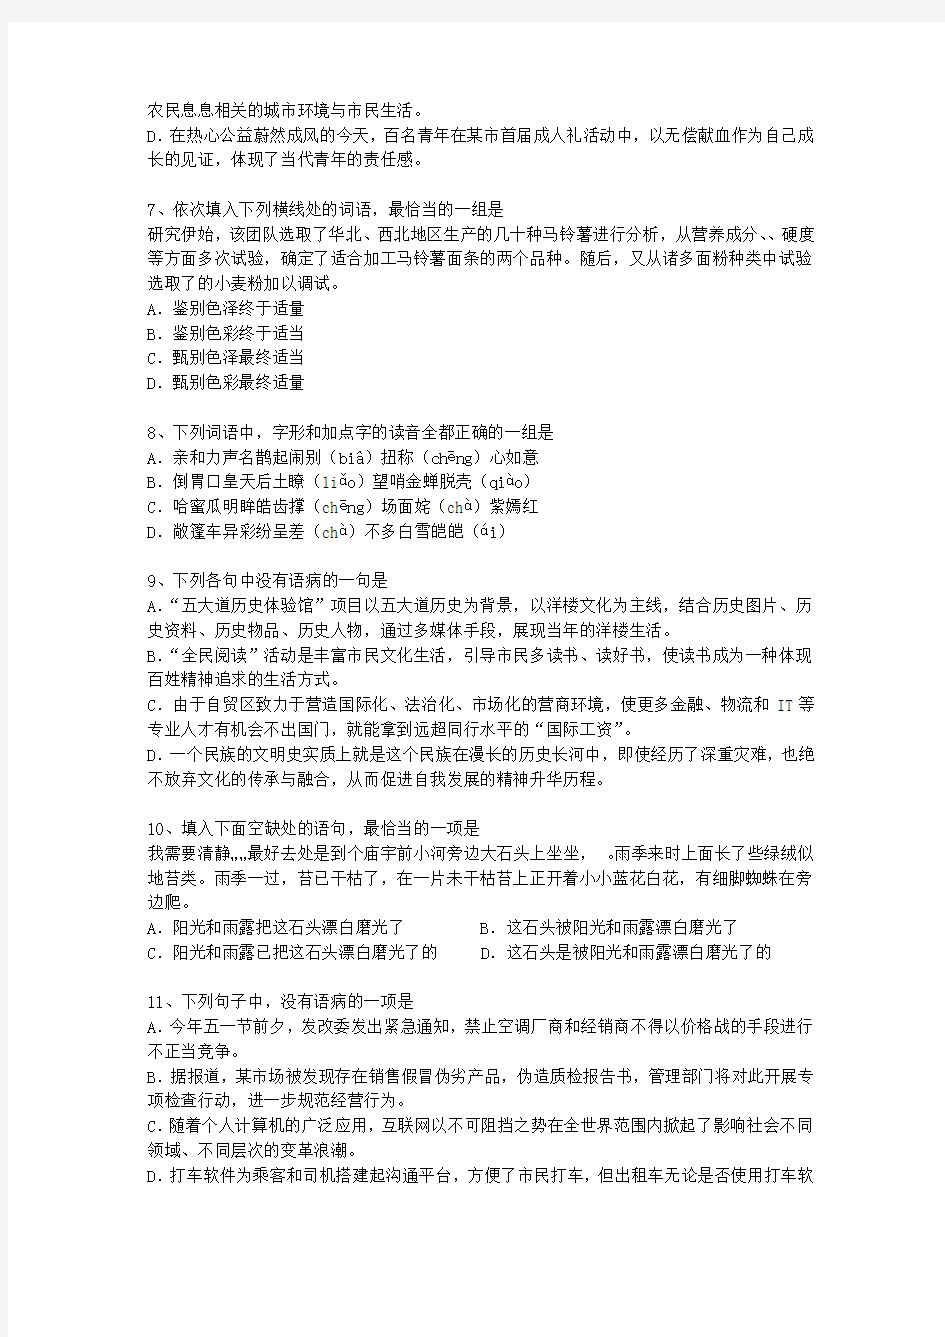 2013广东省高考语文试卷及参考答案考试重点和考试技巧